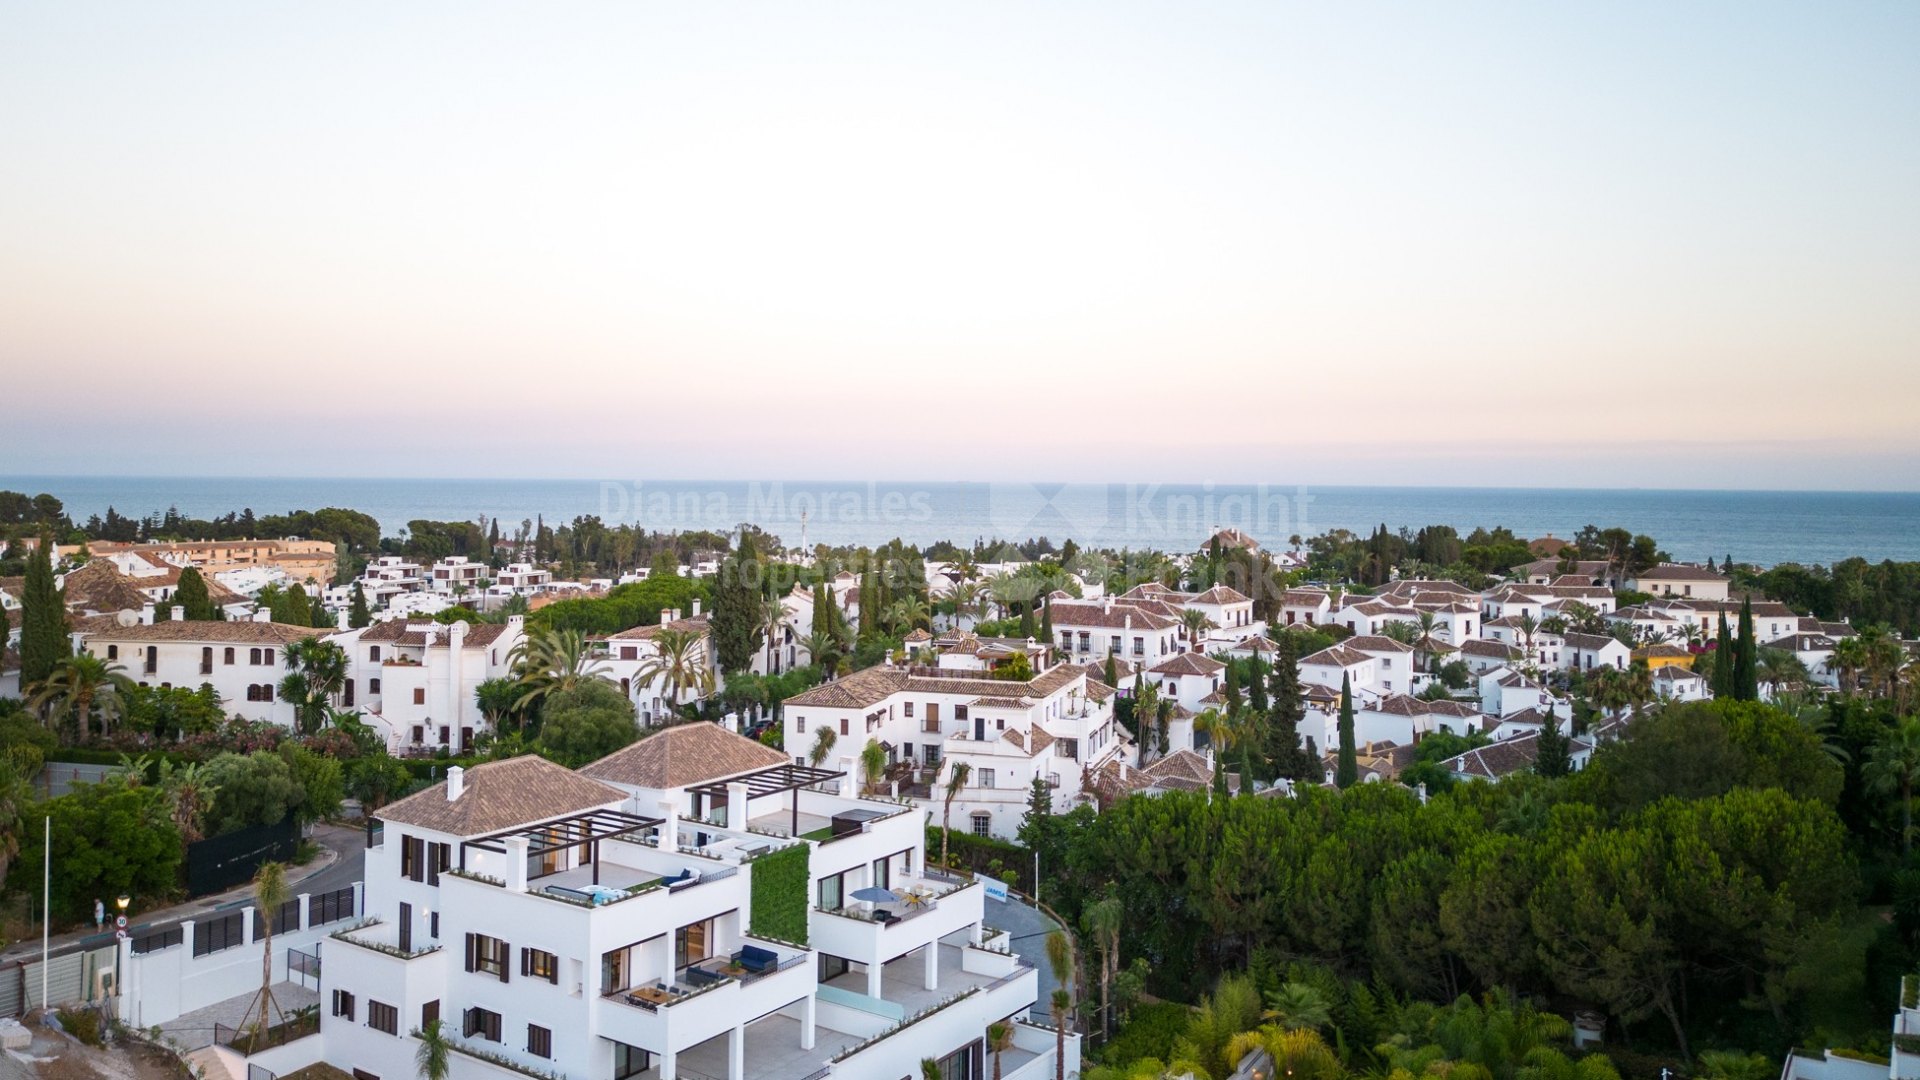 Las Lomas del Marbella Club, Ático en dos niveles en distinguida urbanización